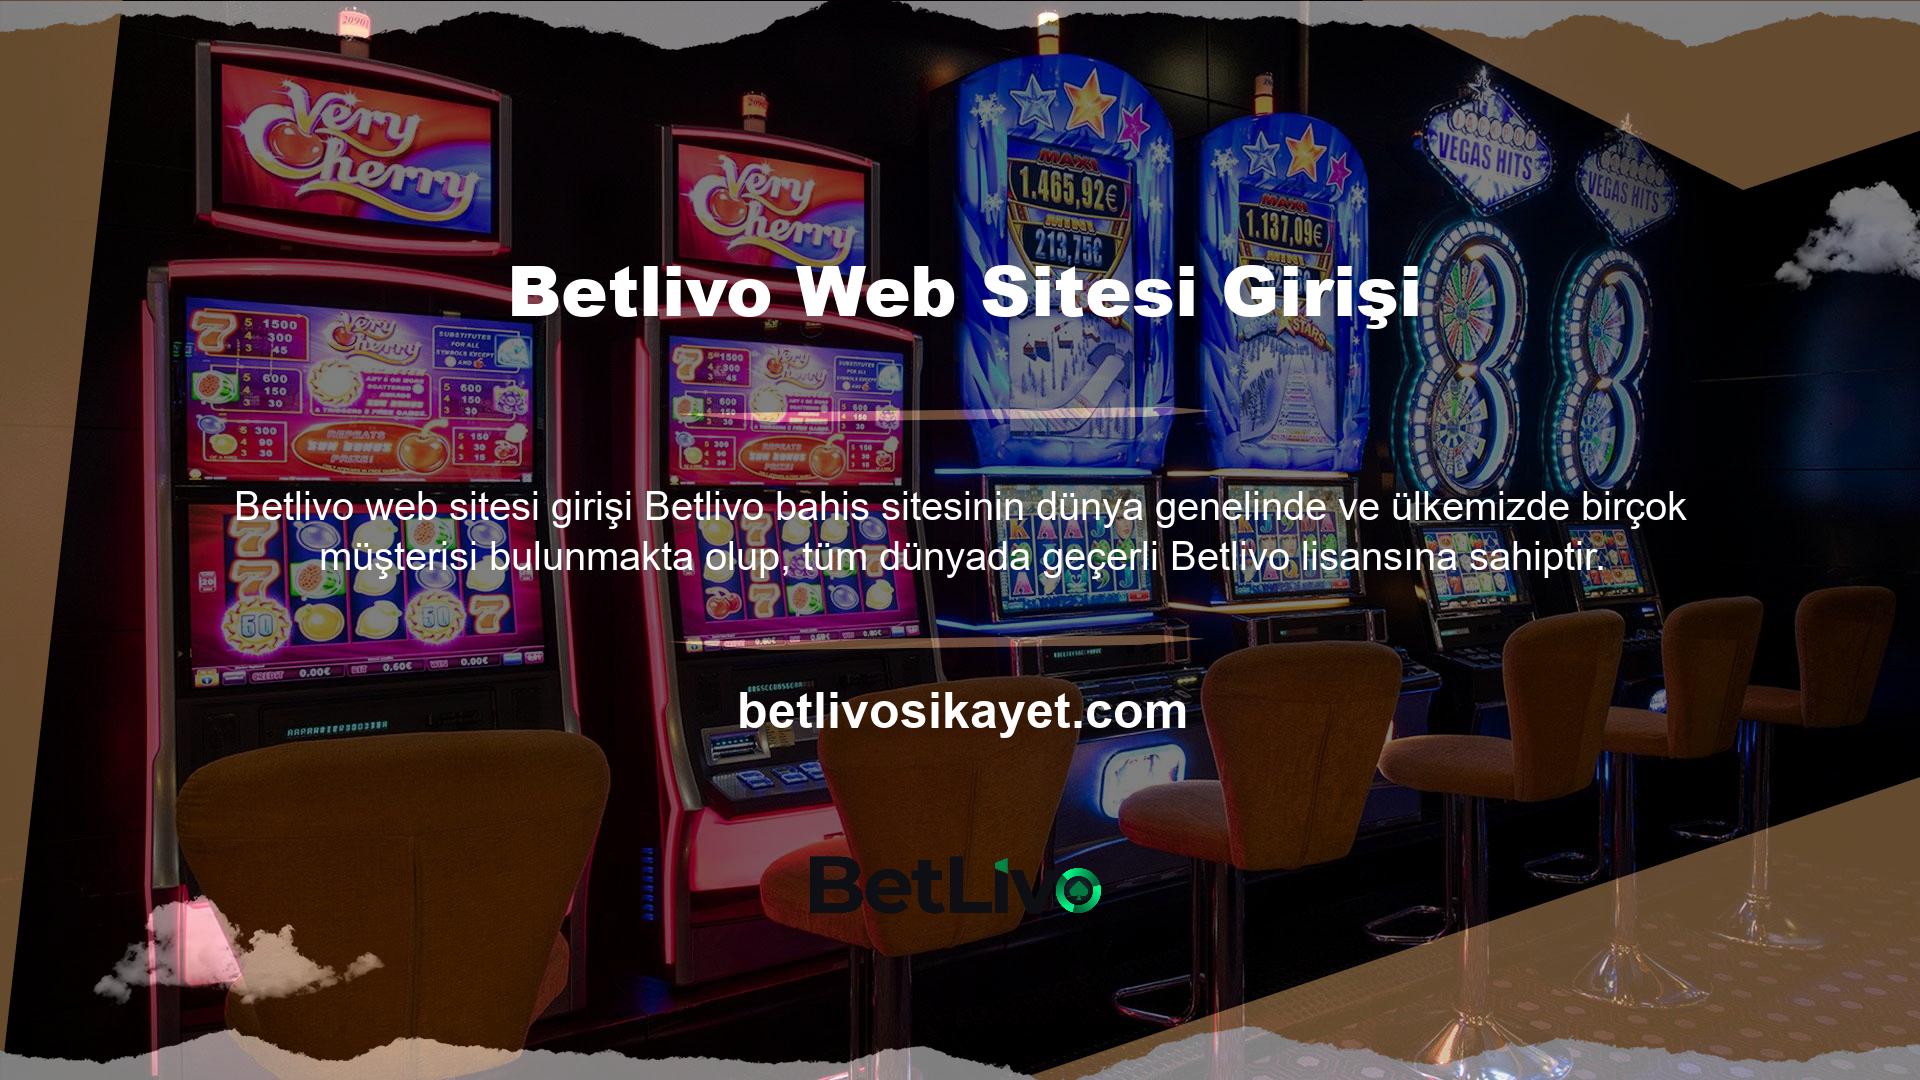 Bahis sitesi Betlivo, bu lisansı müşterilerini mümkün olan her şekilde korumak için kullanır